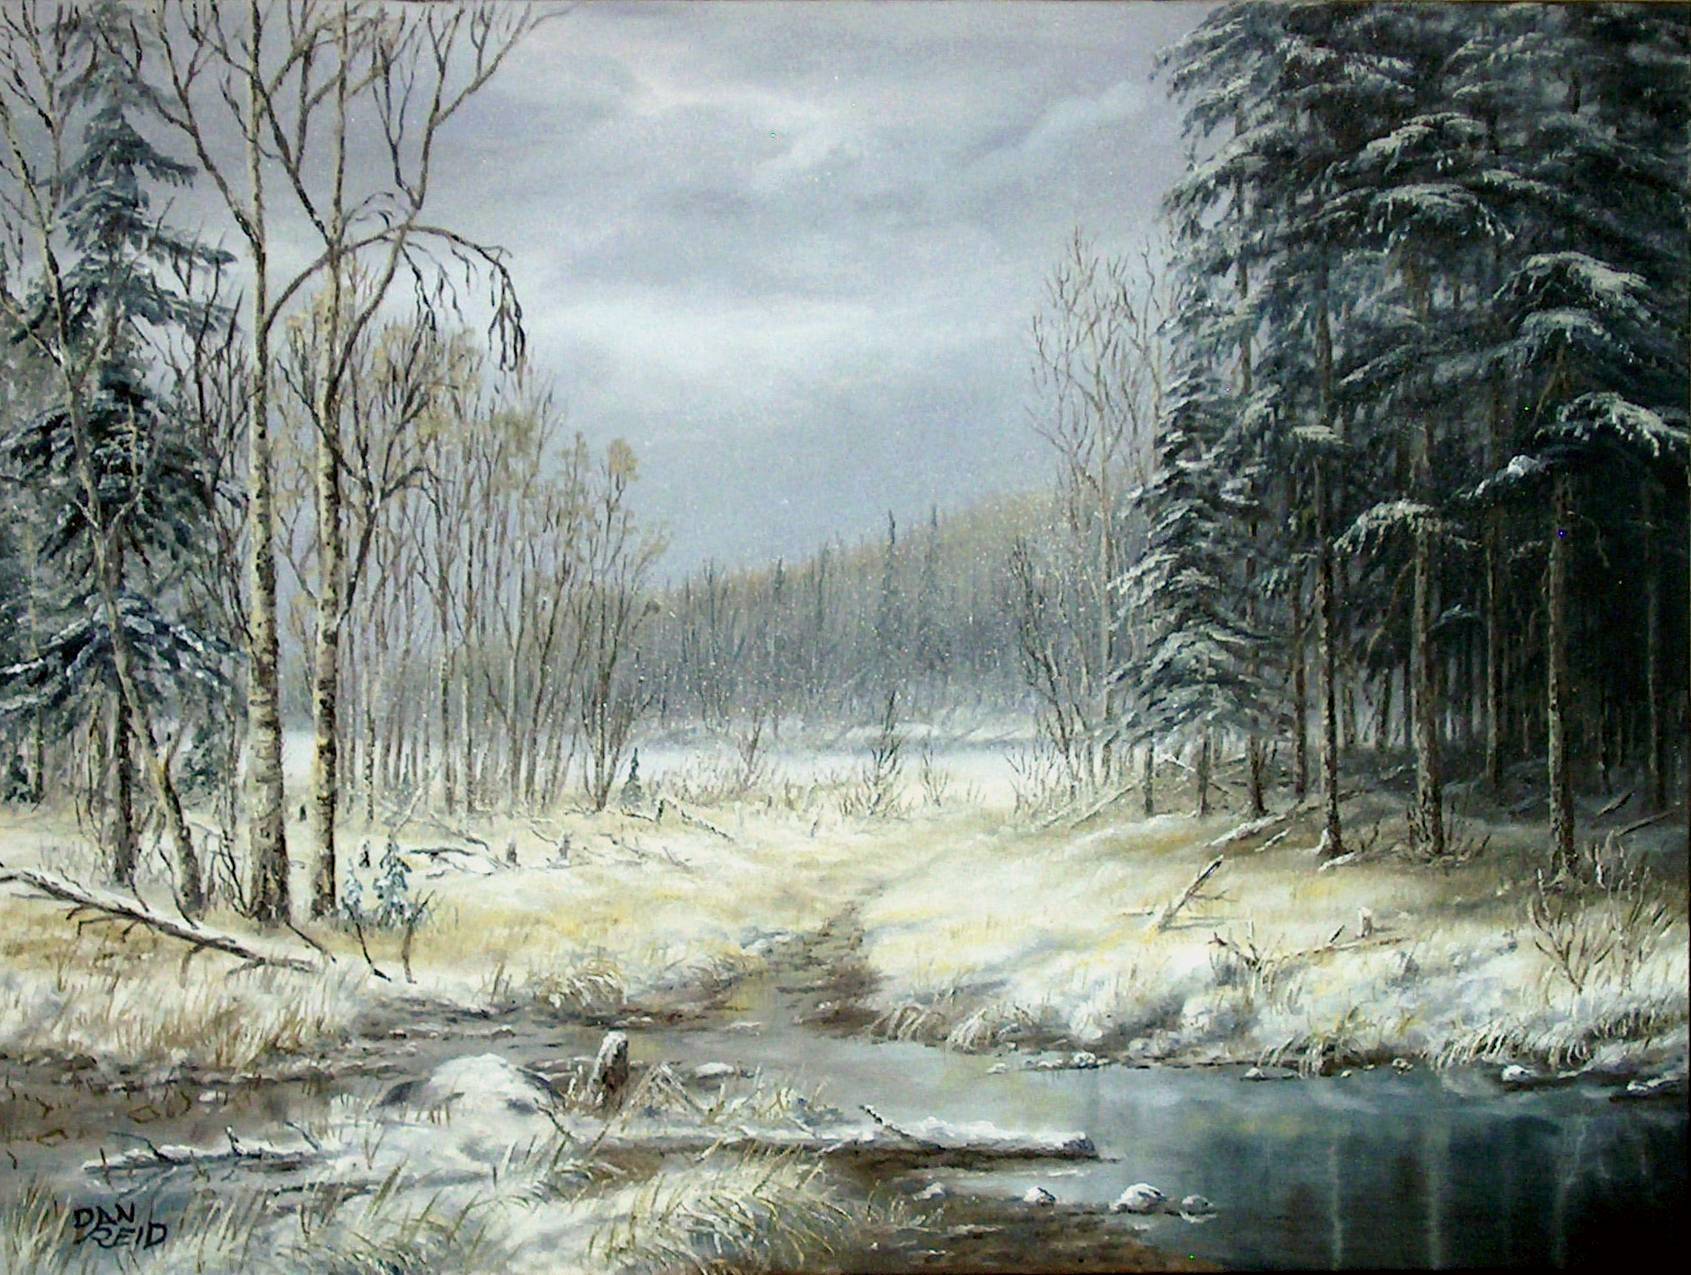 Winter Woods by Dan Reid